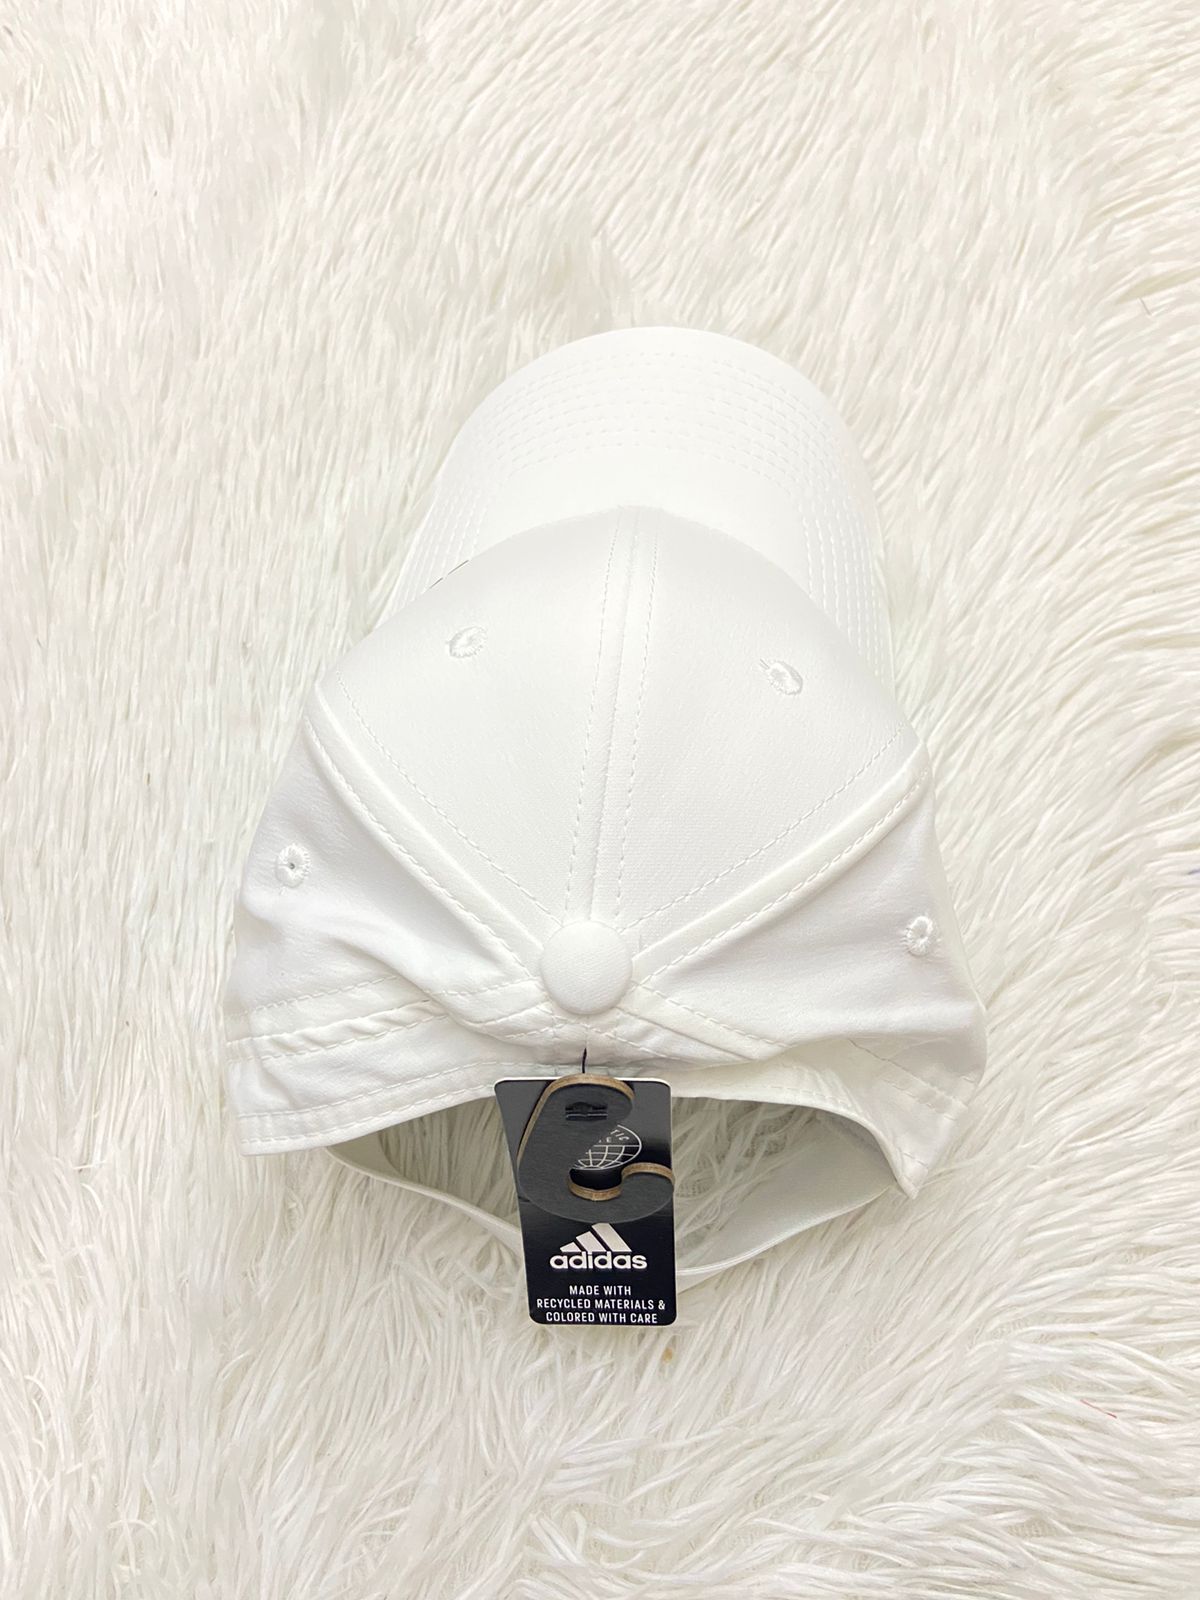 Gorras Adidas original en color blanco con diseño de la marca ADIDAS en color negro